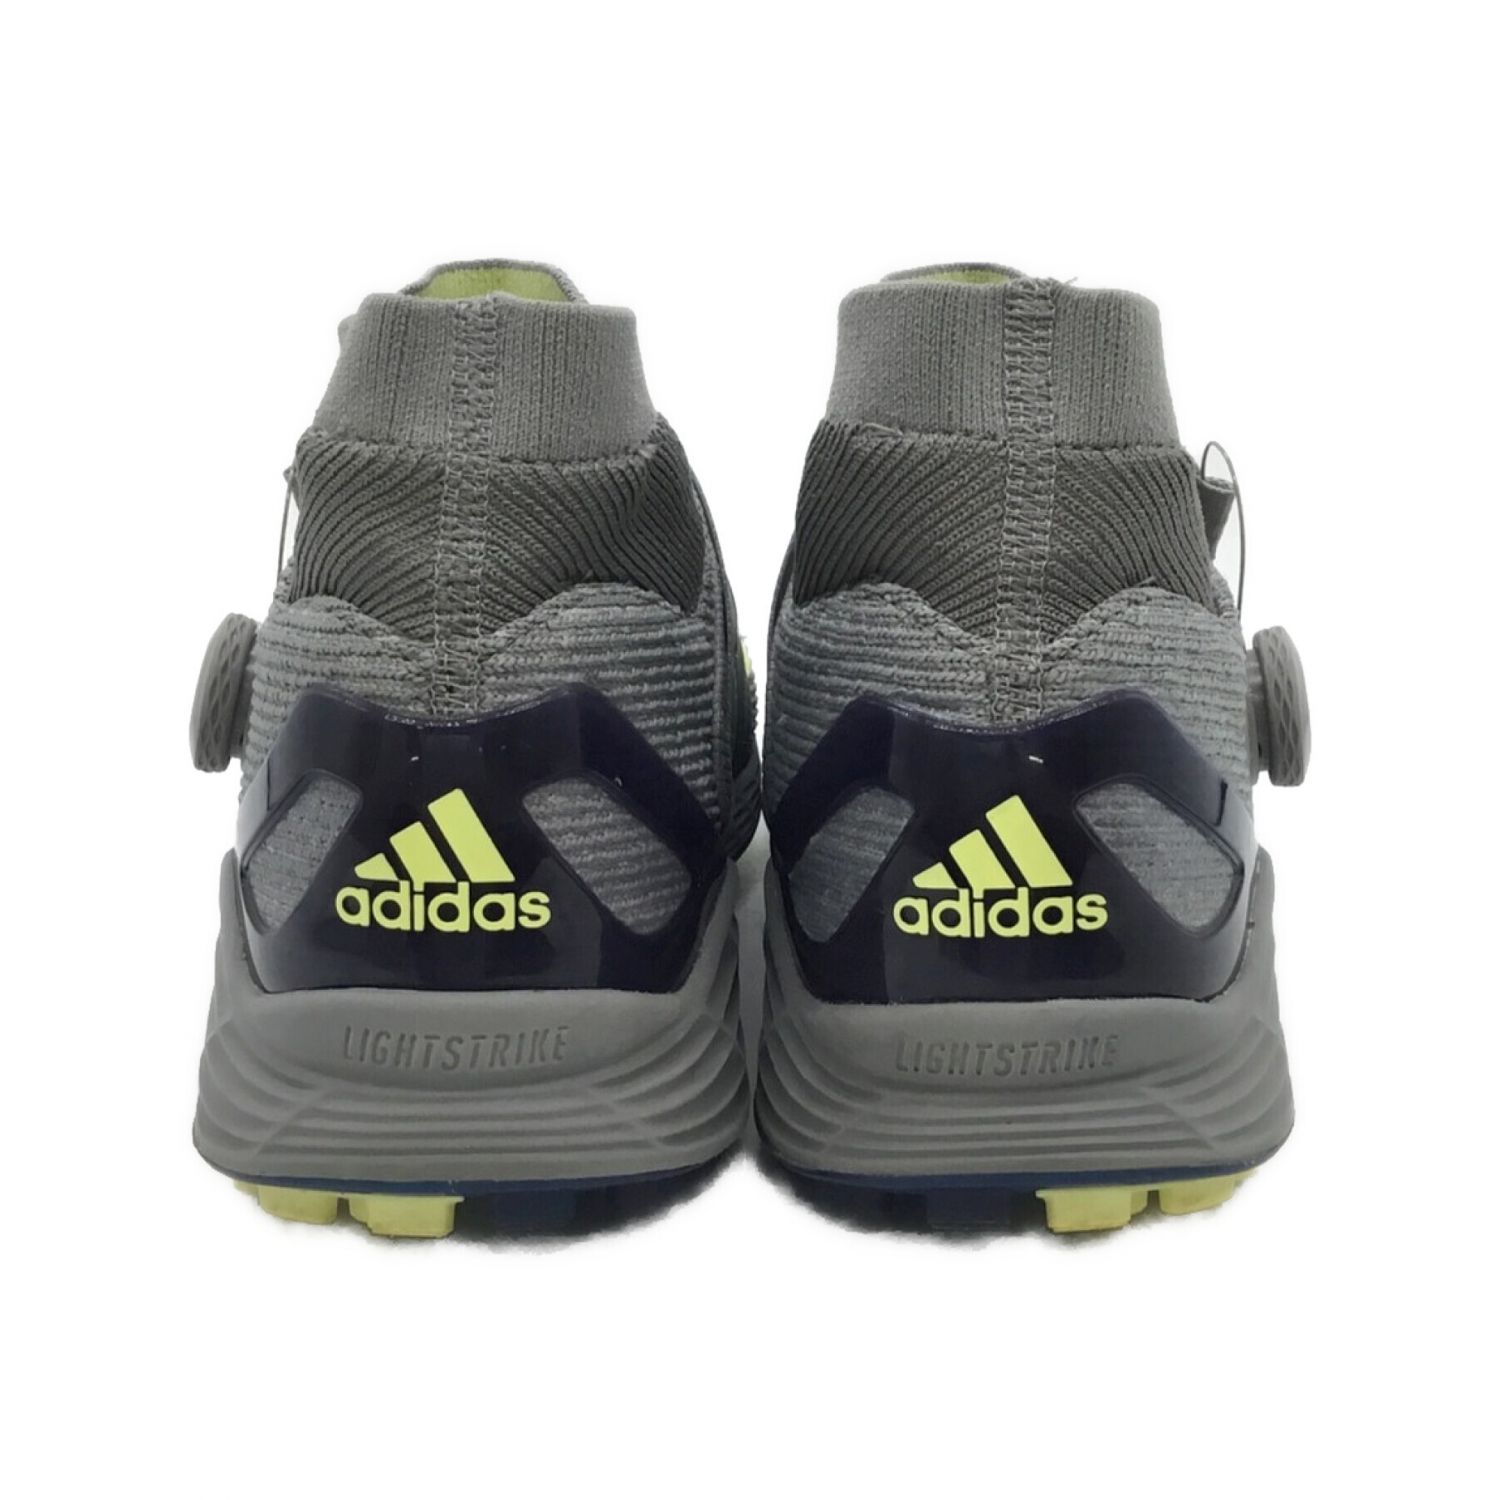 adidas (アディダス) ゴルフシューズ メンズ SIZE 26cm グレー ZG21 